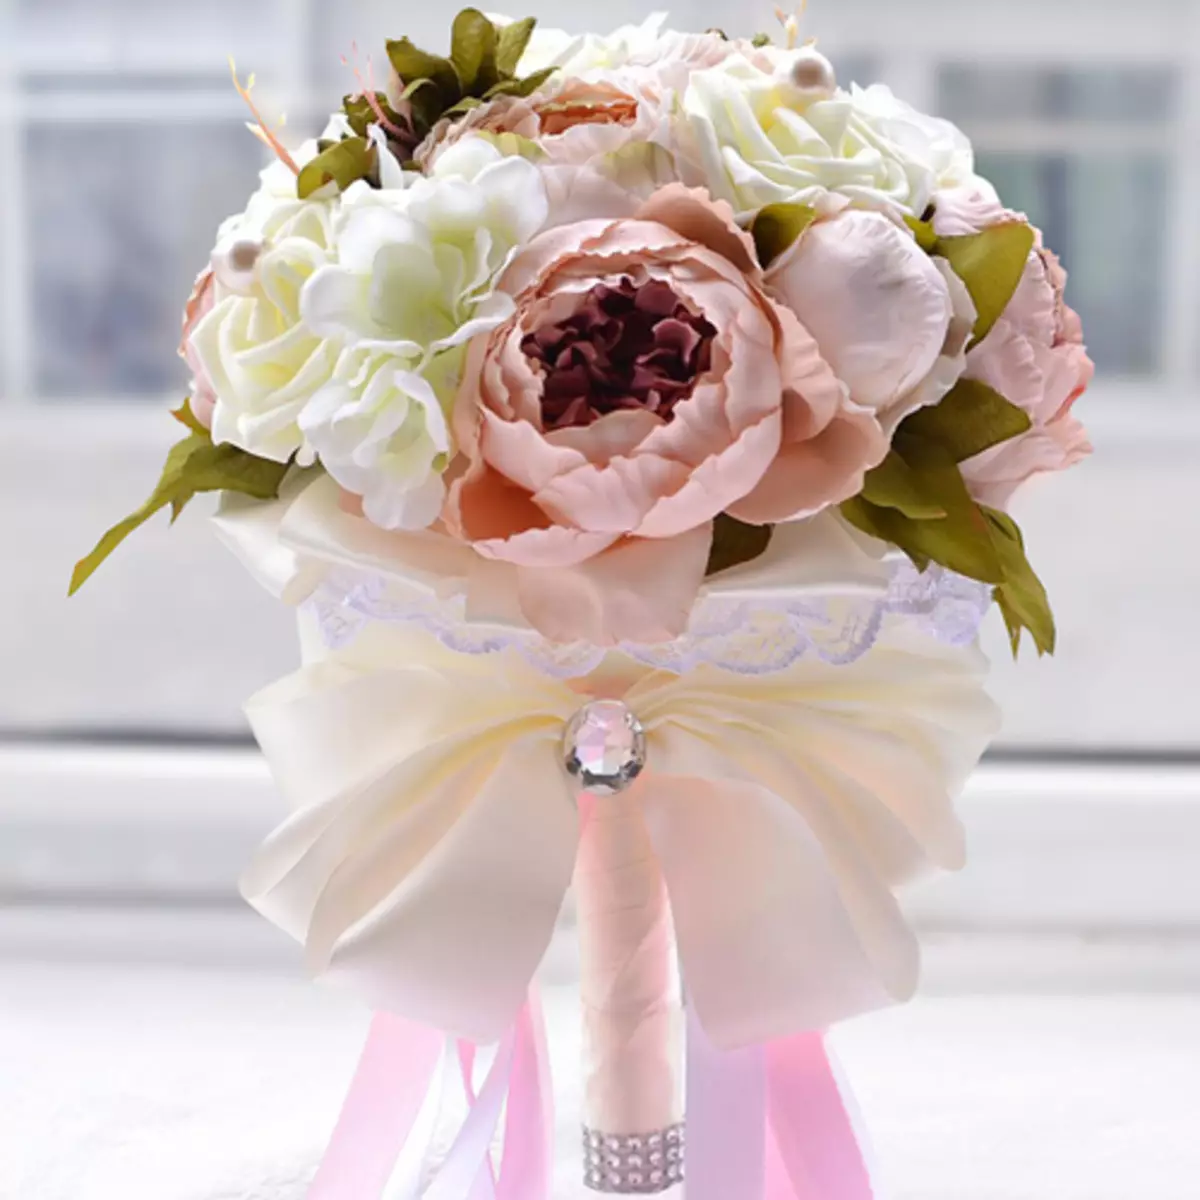 Vestuvių peonijų puokštė (108 nuotraukos): deriniai su baltais vandeniu ir raudonaisiais telefonu, bordo, alyvinės ir violetinės gėlės deriniai vestuvių puokštėje 8013_88